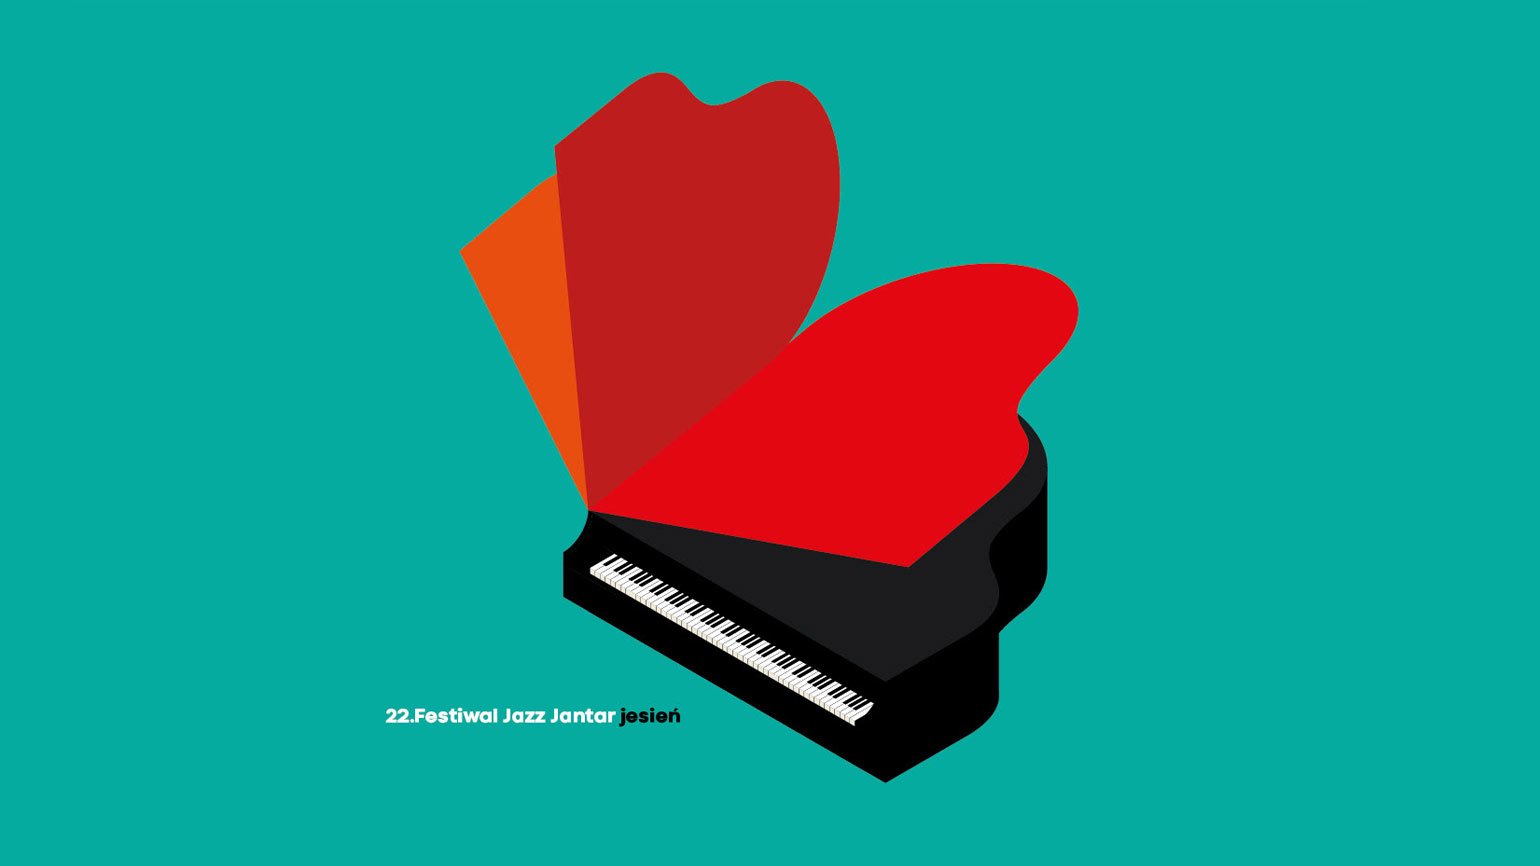 Чёрный рояль с красной крышкой в виде сердца на бирюзовом фоне